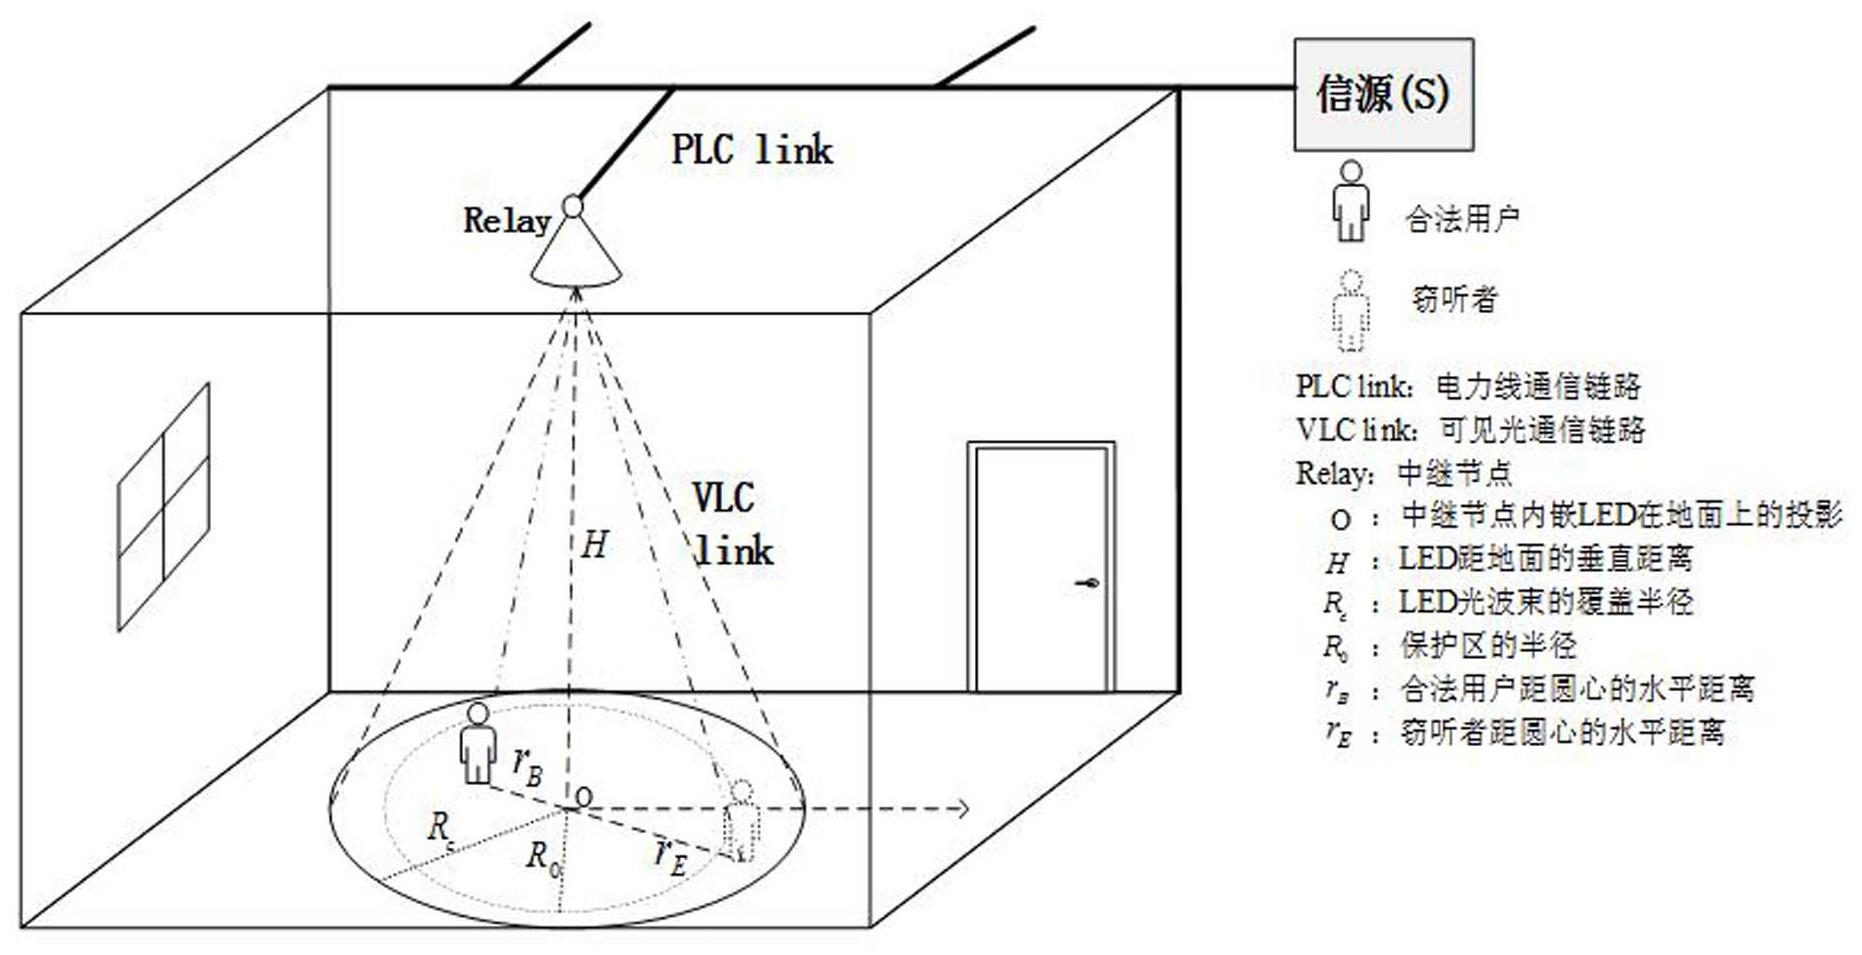 一种室内混合PLC/VLC网络的安全传输方法